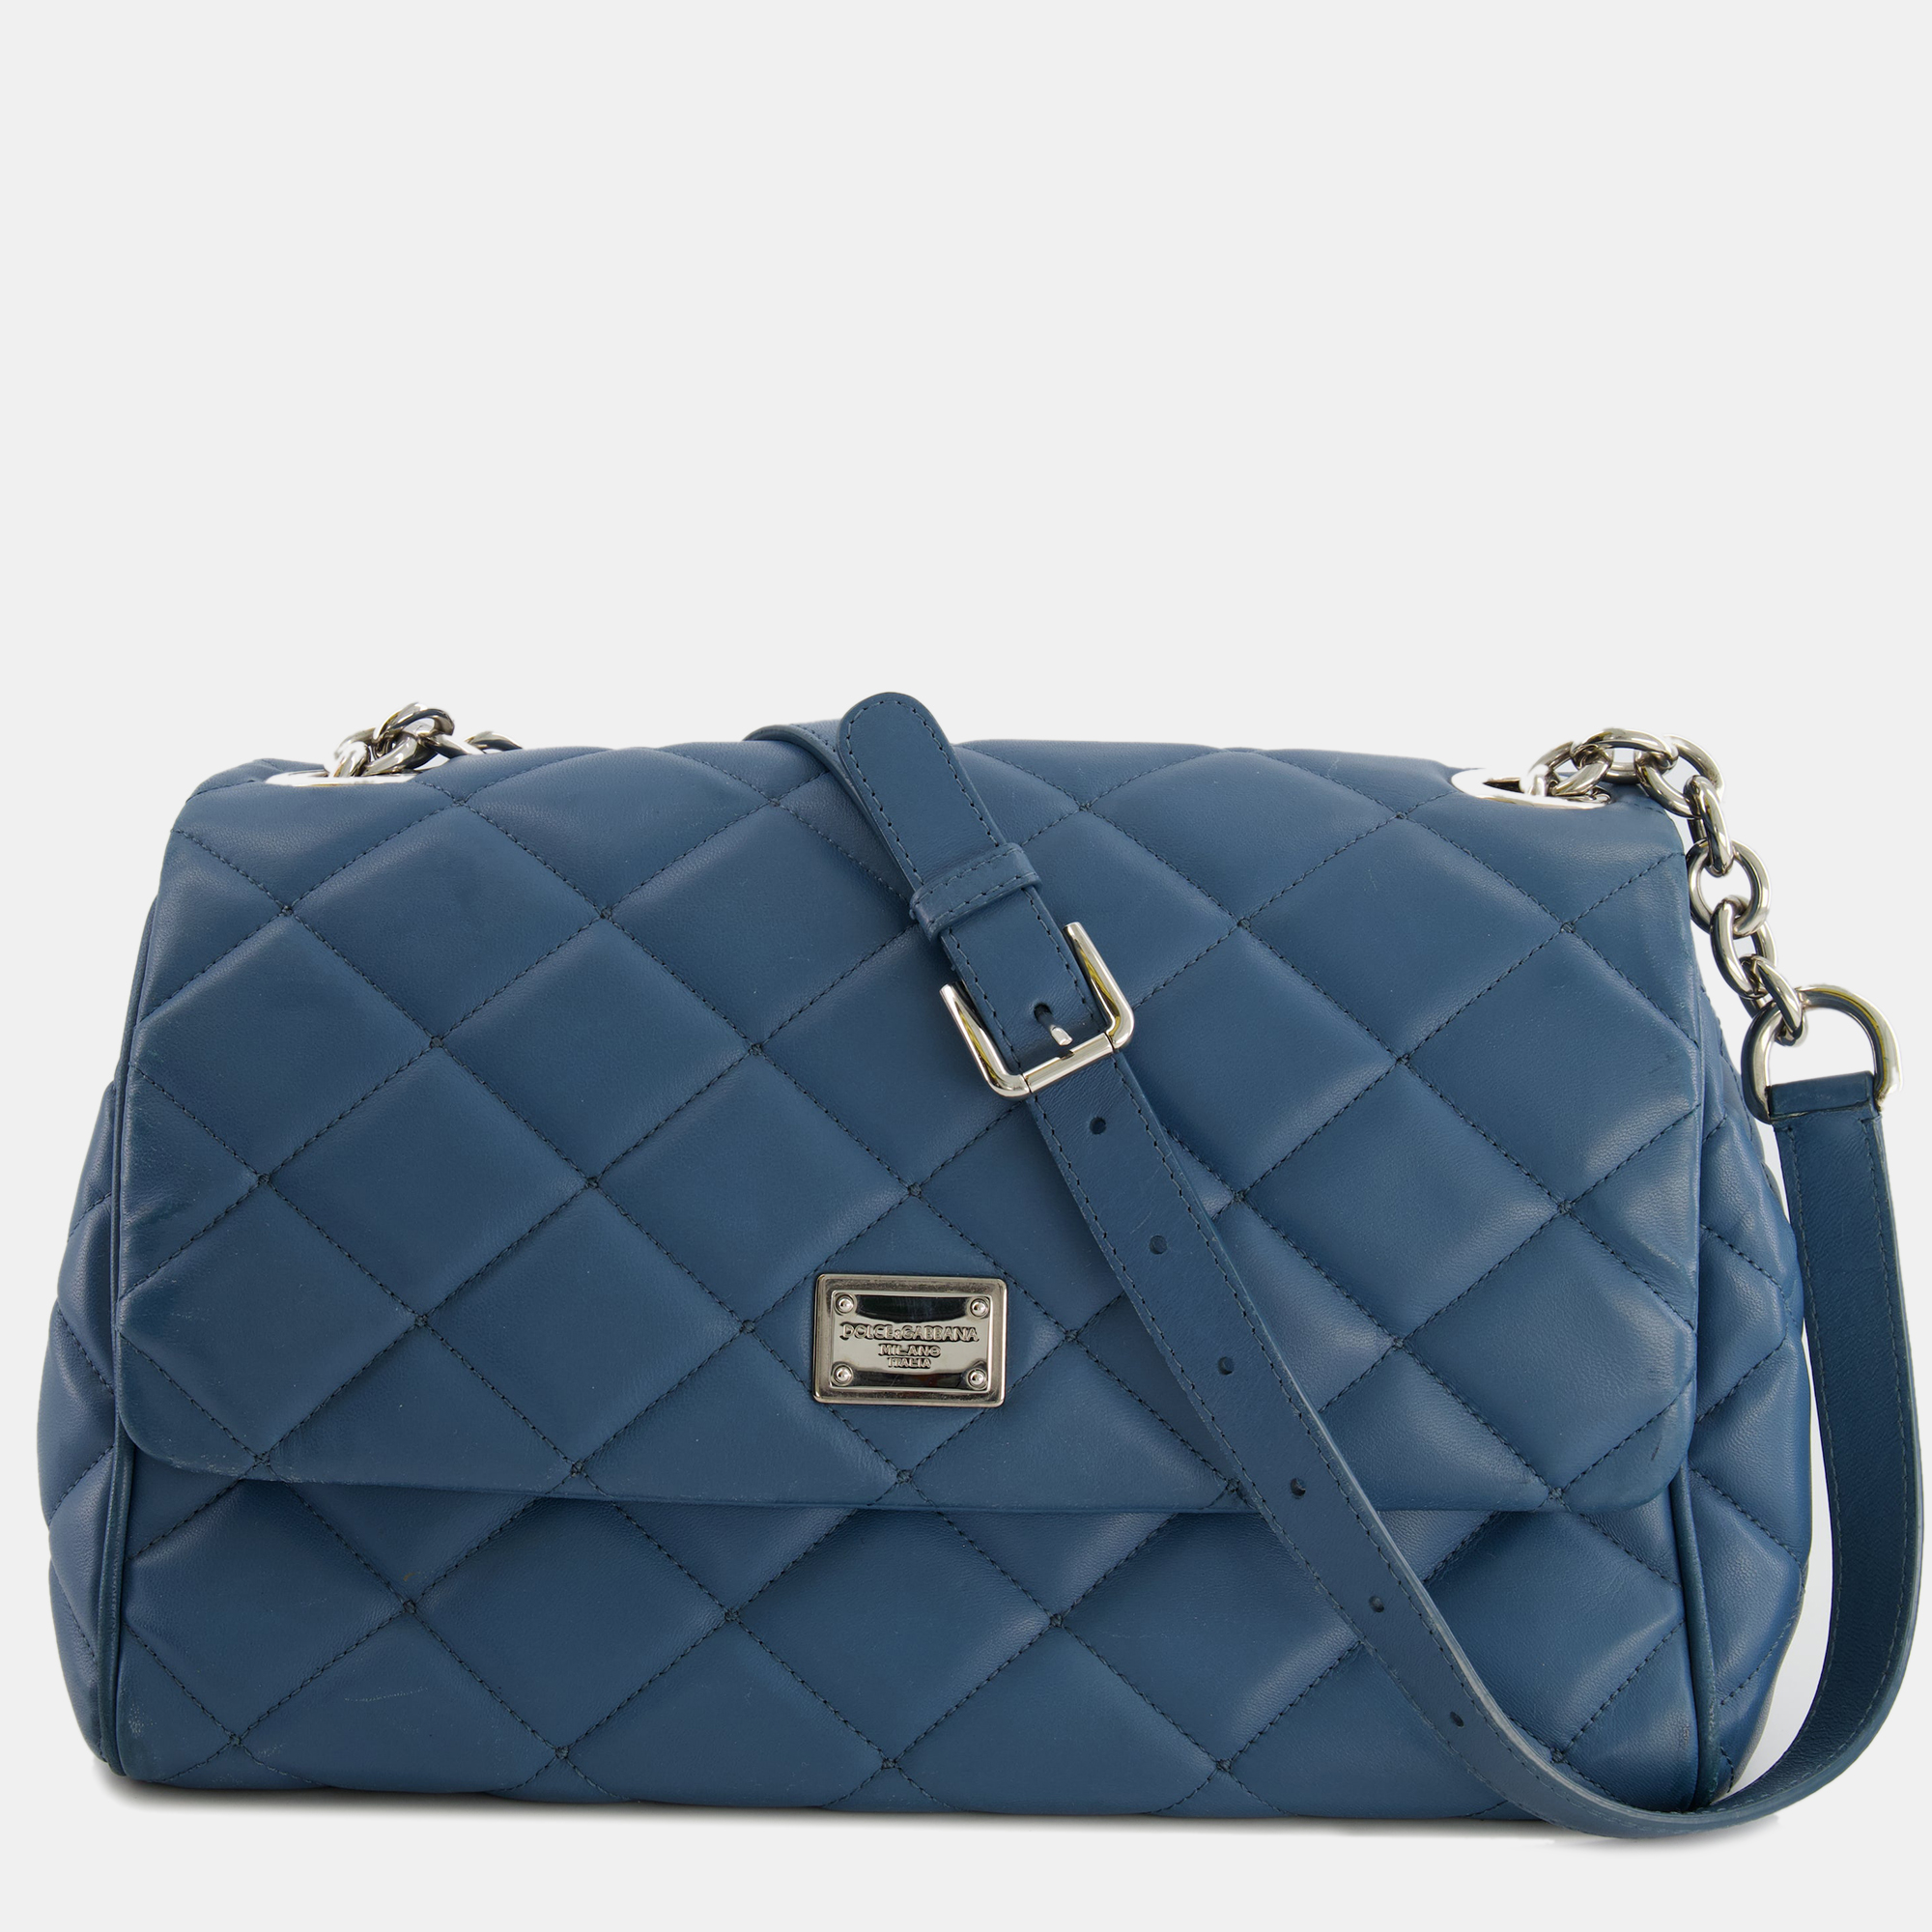 

Dolce & Gabbana Teal Blue Leather Shoulder Bag with Silver Hardware